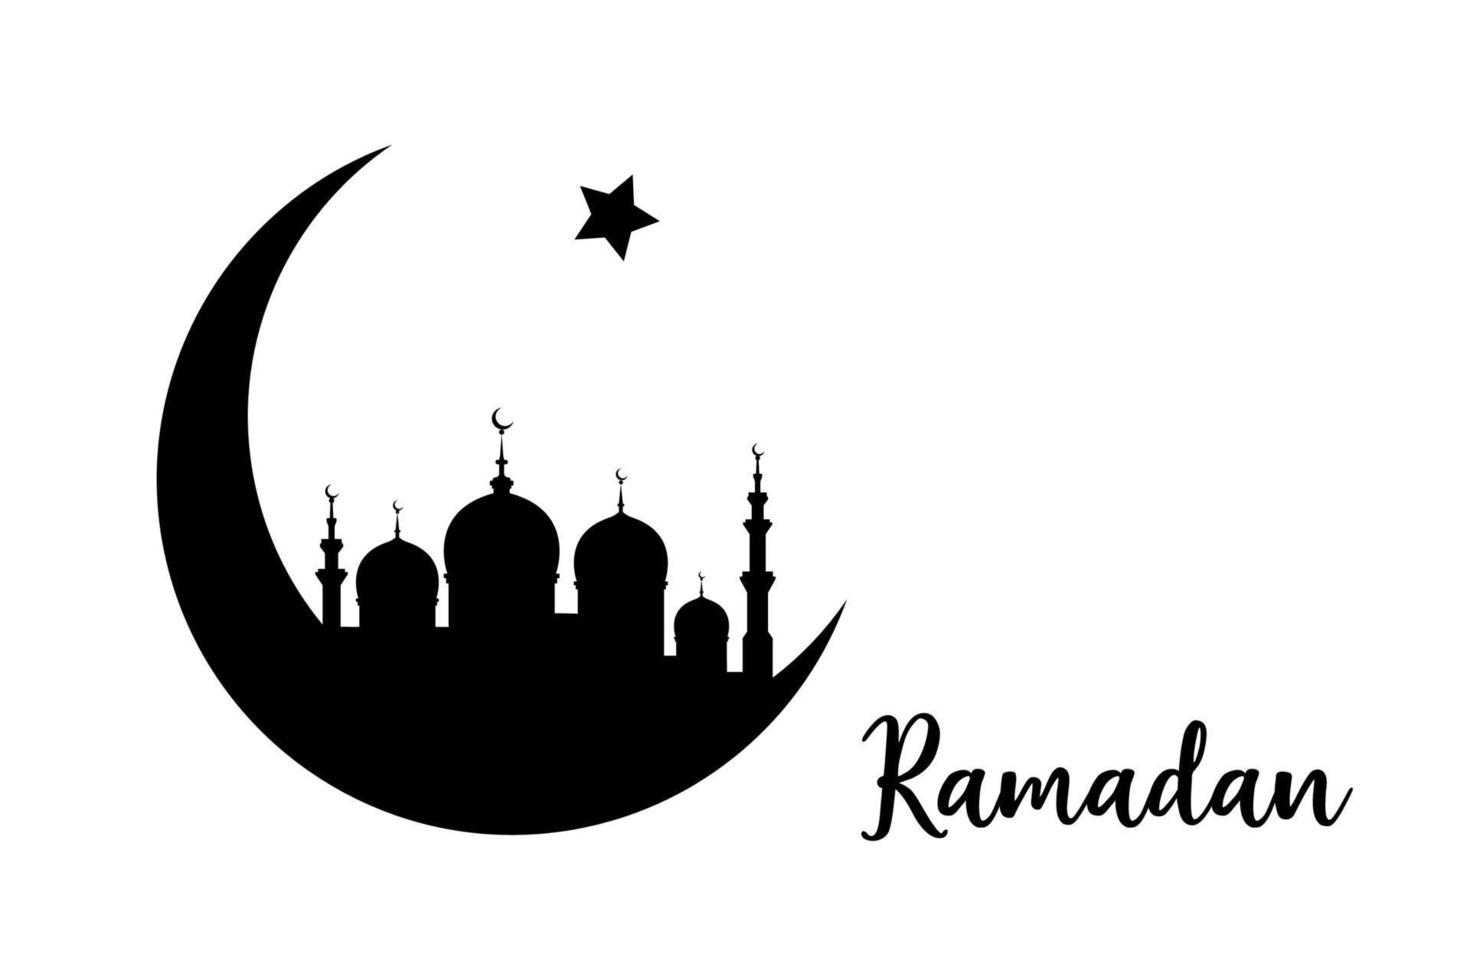 Ramadan Konzept im Halbmond Mond gestalten mit Arabisch islamisch Moschee zum heilig Monat von Muslim Gemeinschaft Festival Feier, Vektor schwarz Silhouette isoliert auf Weiß Hintergrund